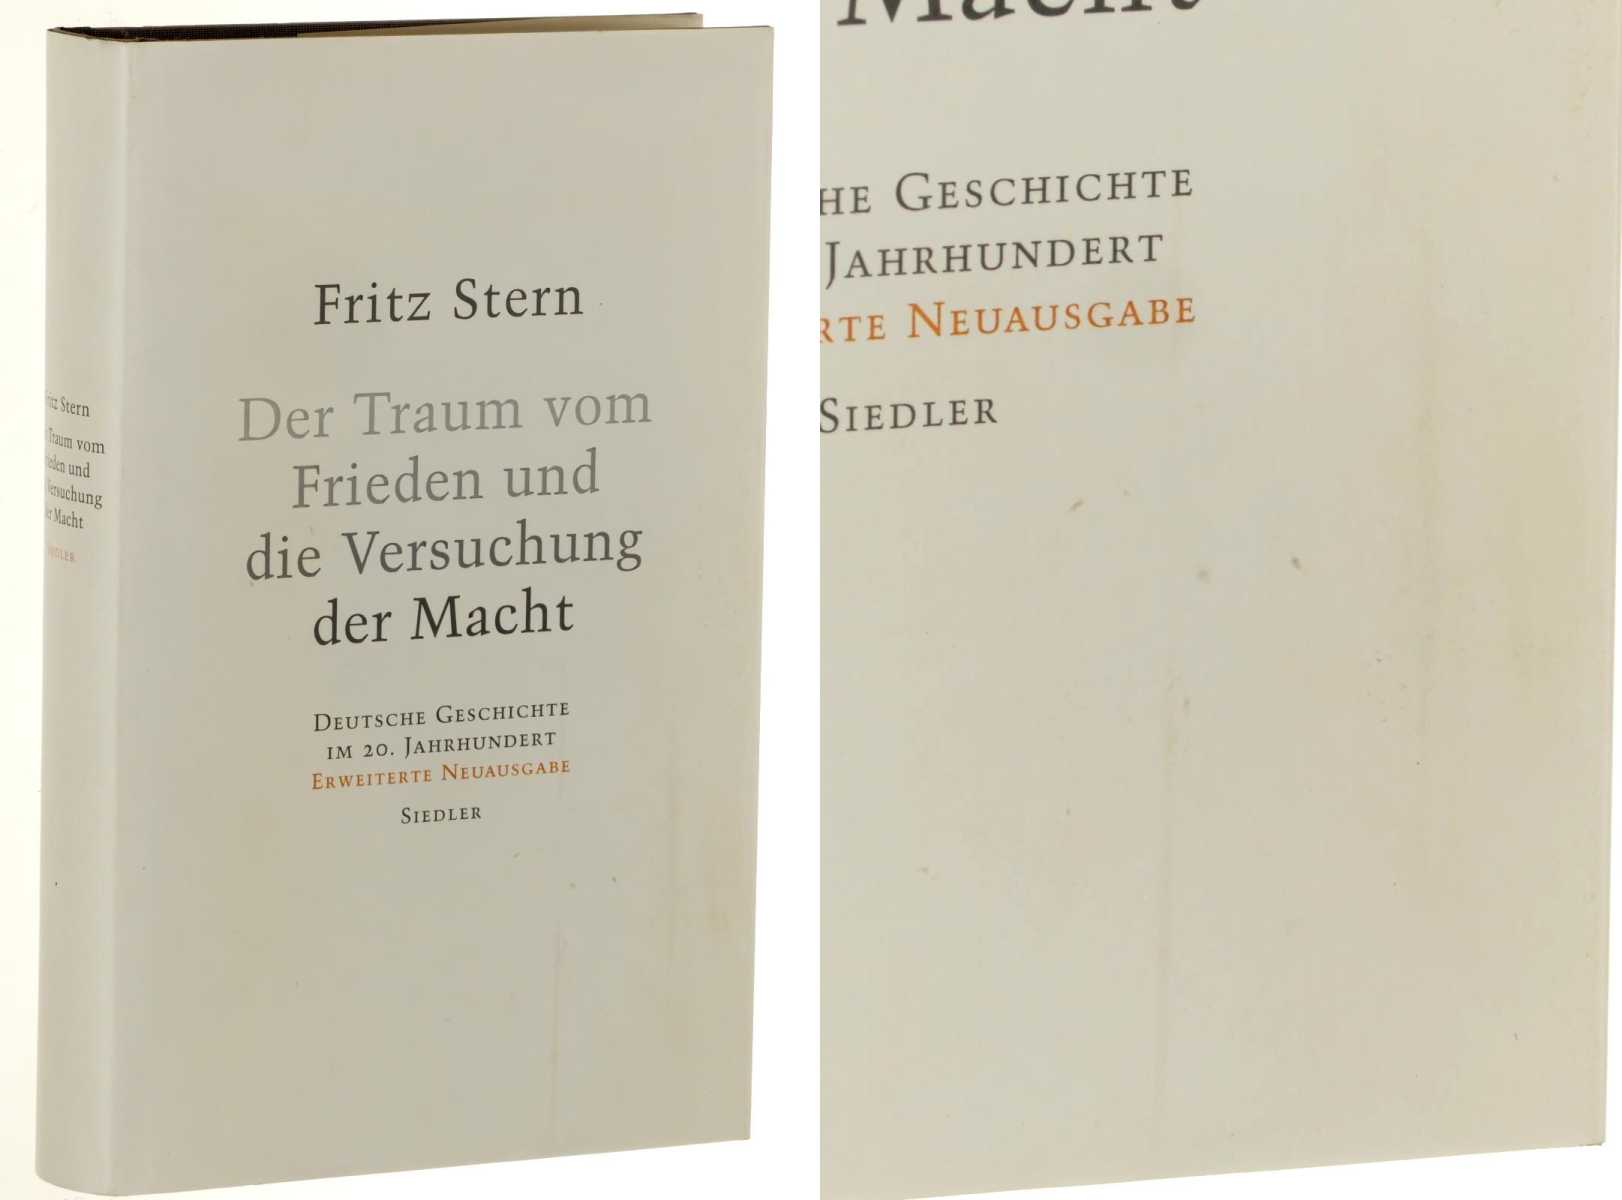 Stern, Fritz:  Der Traum vom Frieden und die Versuchung der Macht. deutsche Geschichte im 20. Jahrhundert. 